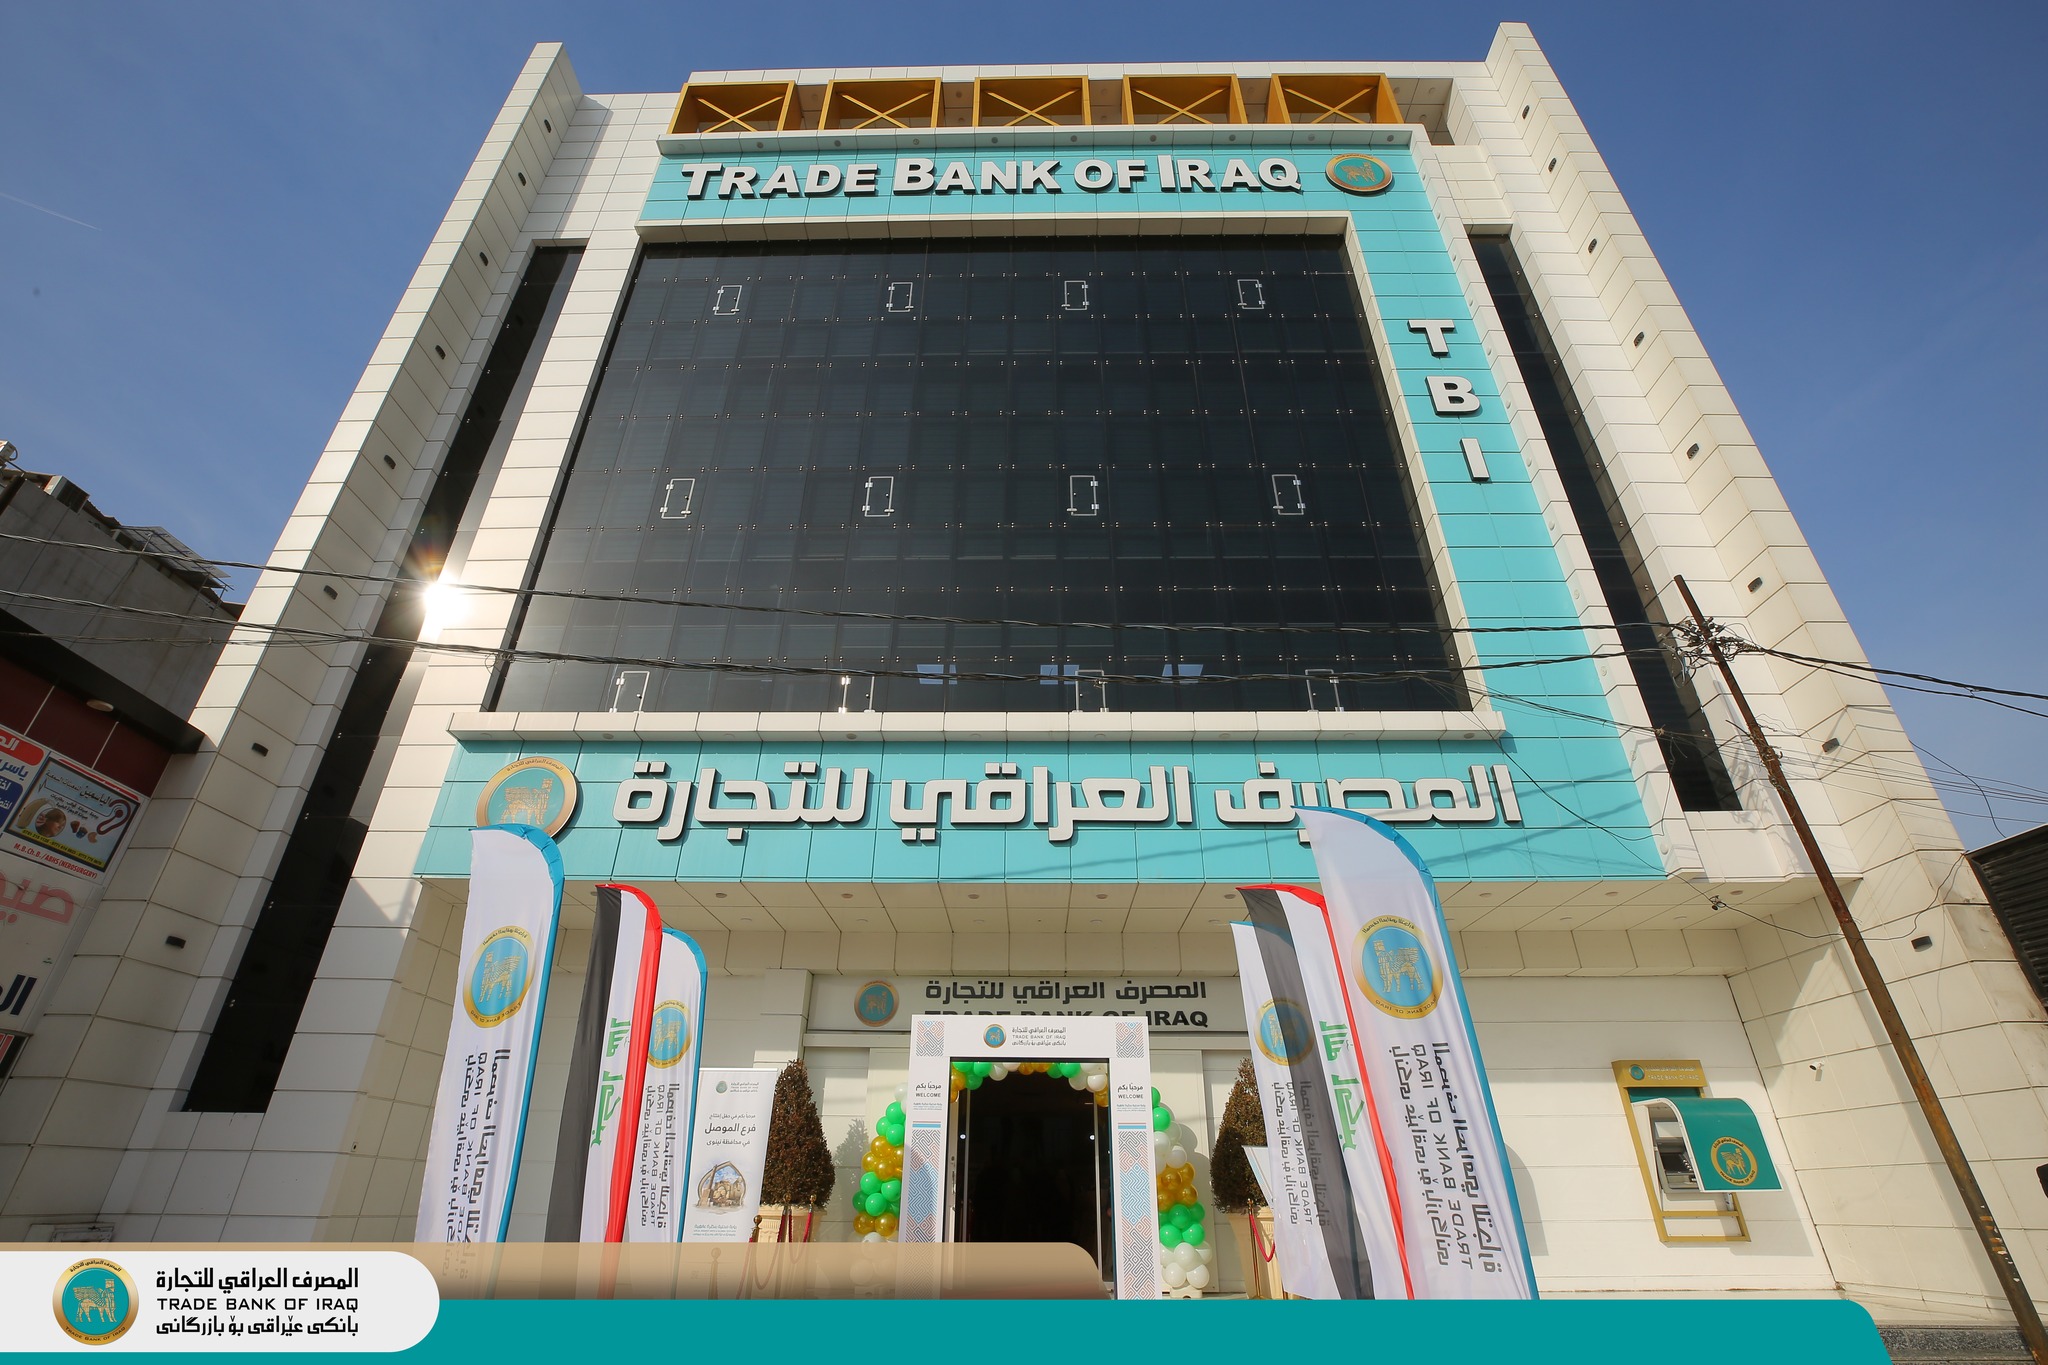 المصرف العراقي للتجارة يفتتح فرعهُ الجديد في محافظة نينوى